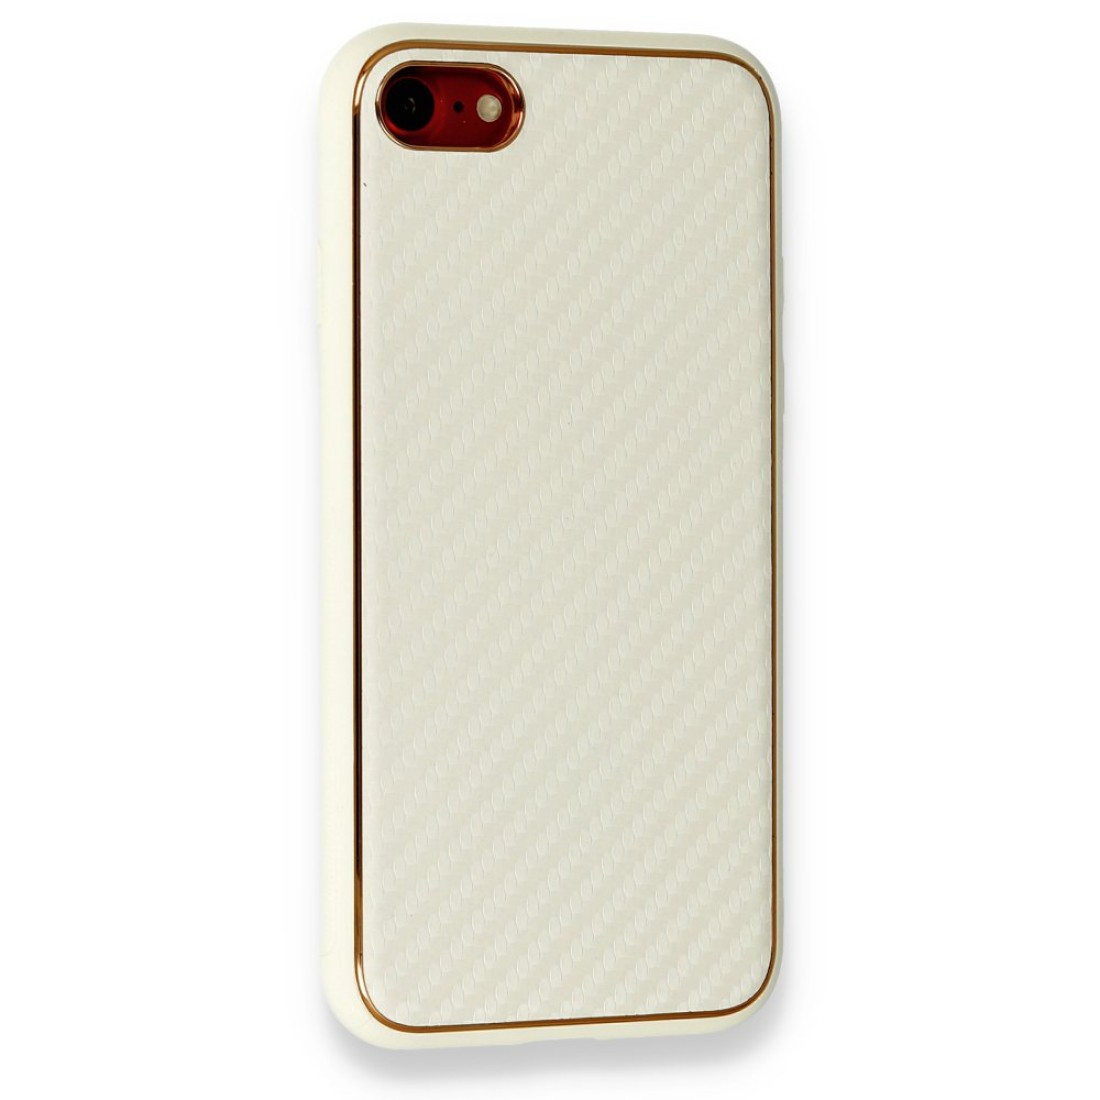 Apple iPhone SE 2020 Kılıf Coco Karbon Silikon - Beyaz